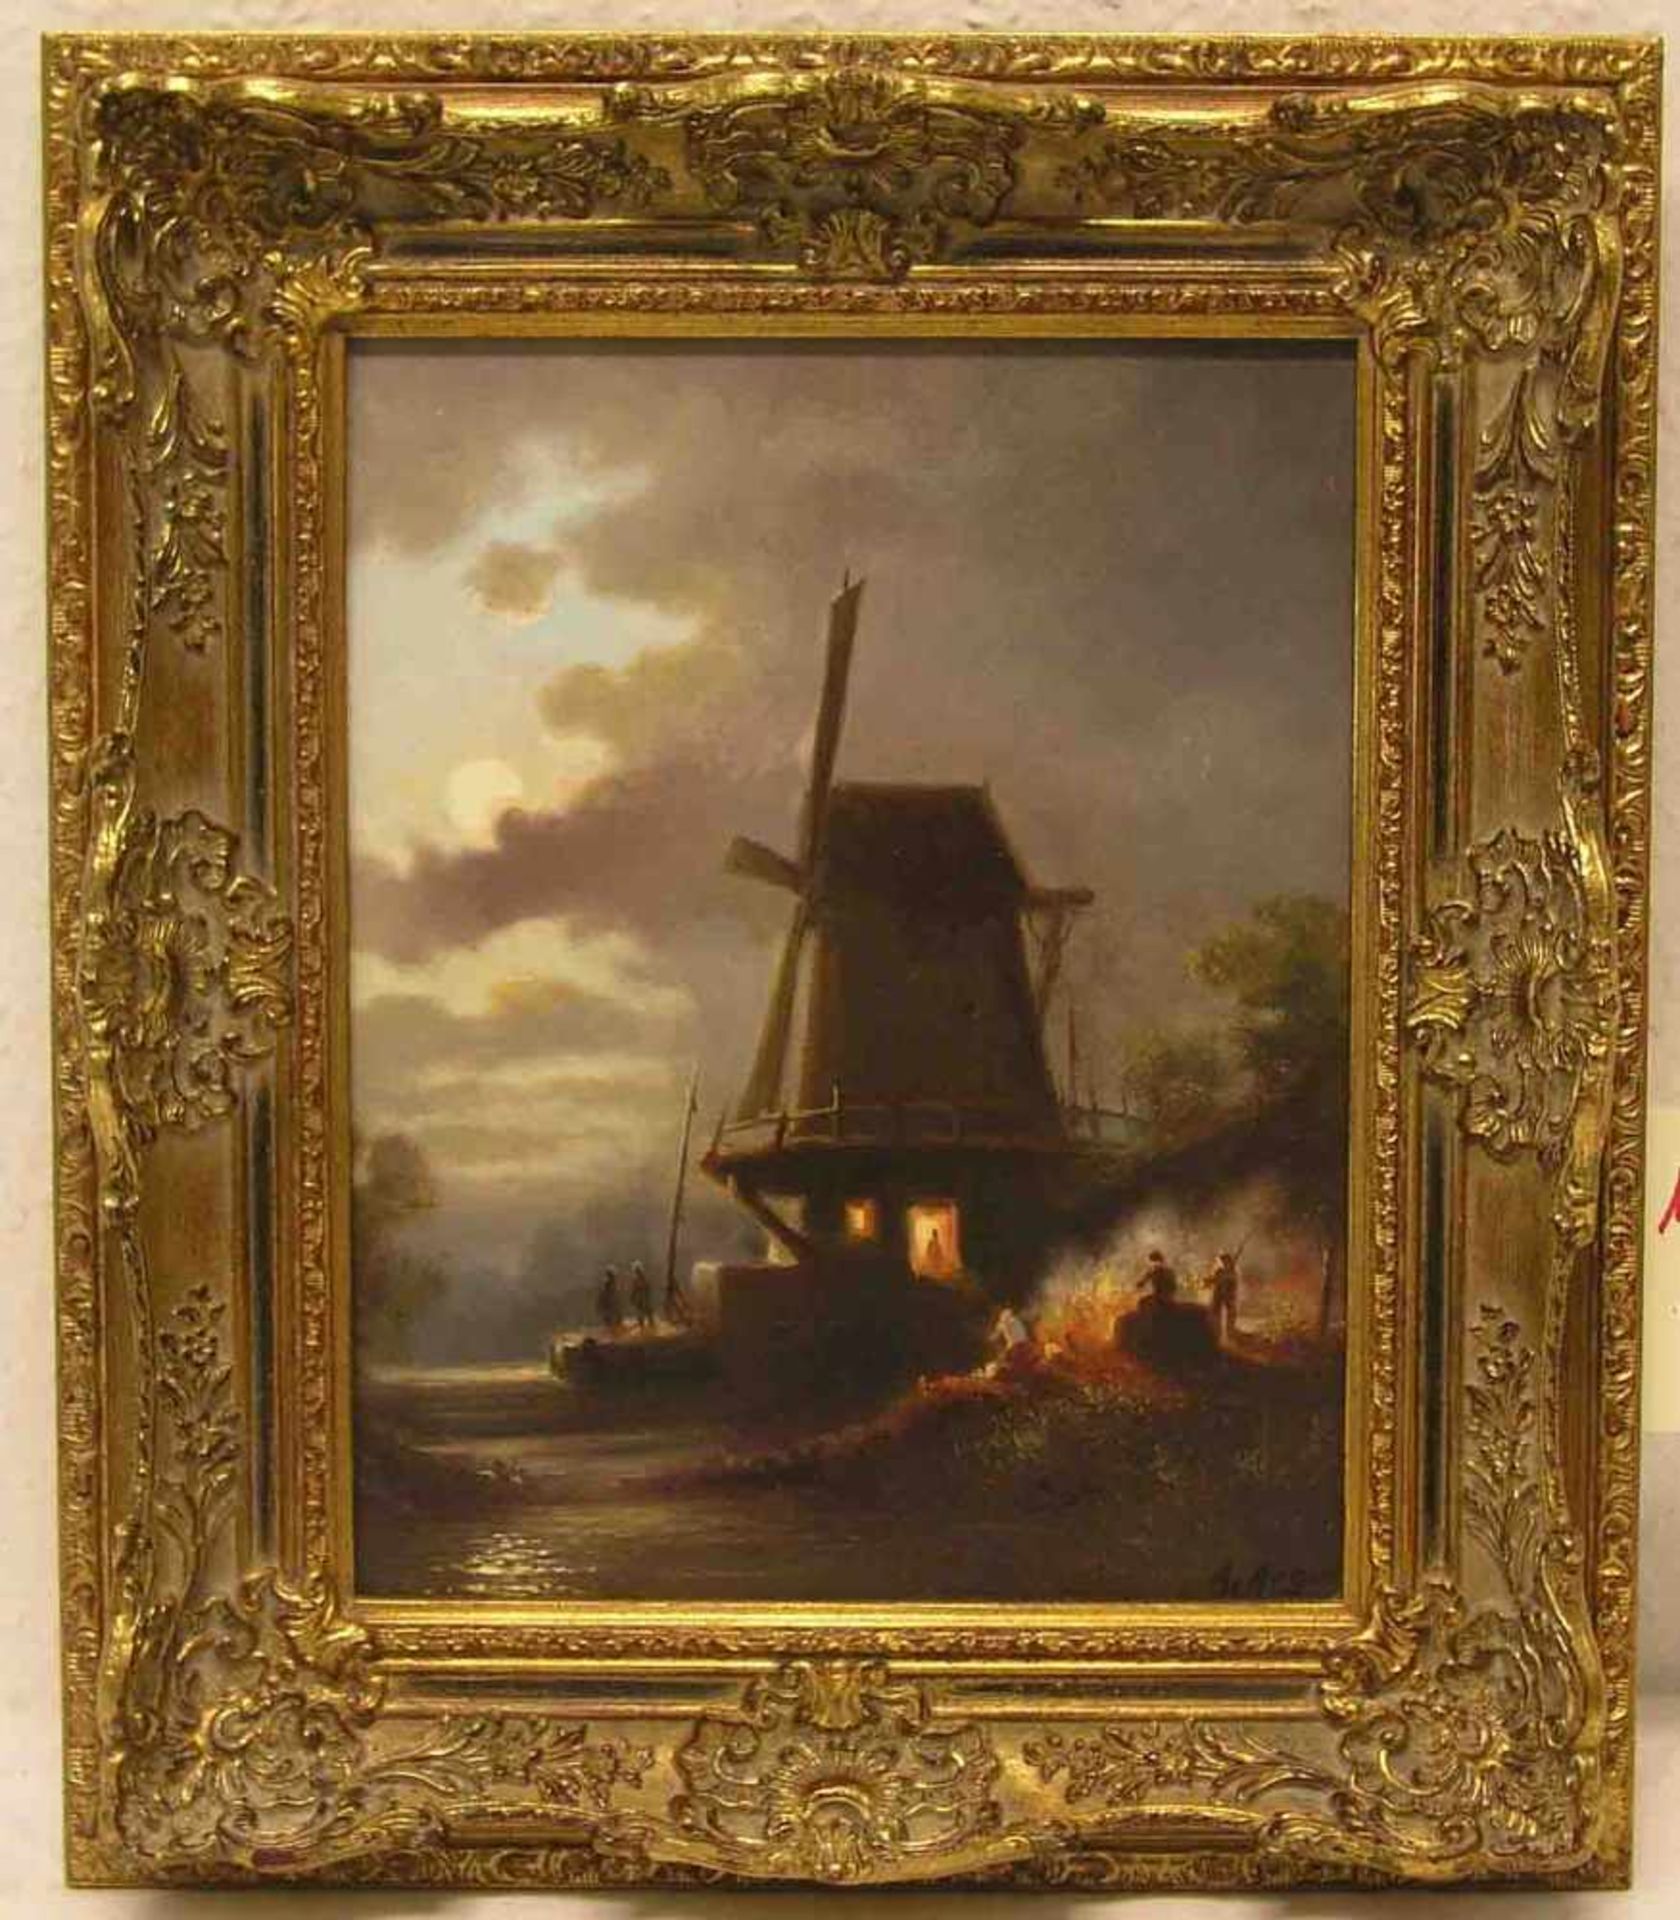 Argun, Atilla, türkischer Maler: "Windmühle bei Nacht". Öl/Lwd., signiert. 28 x 22cm,Rahmen.